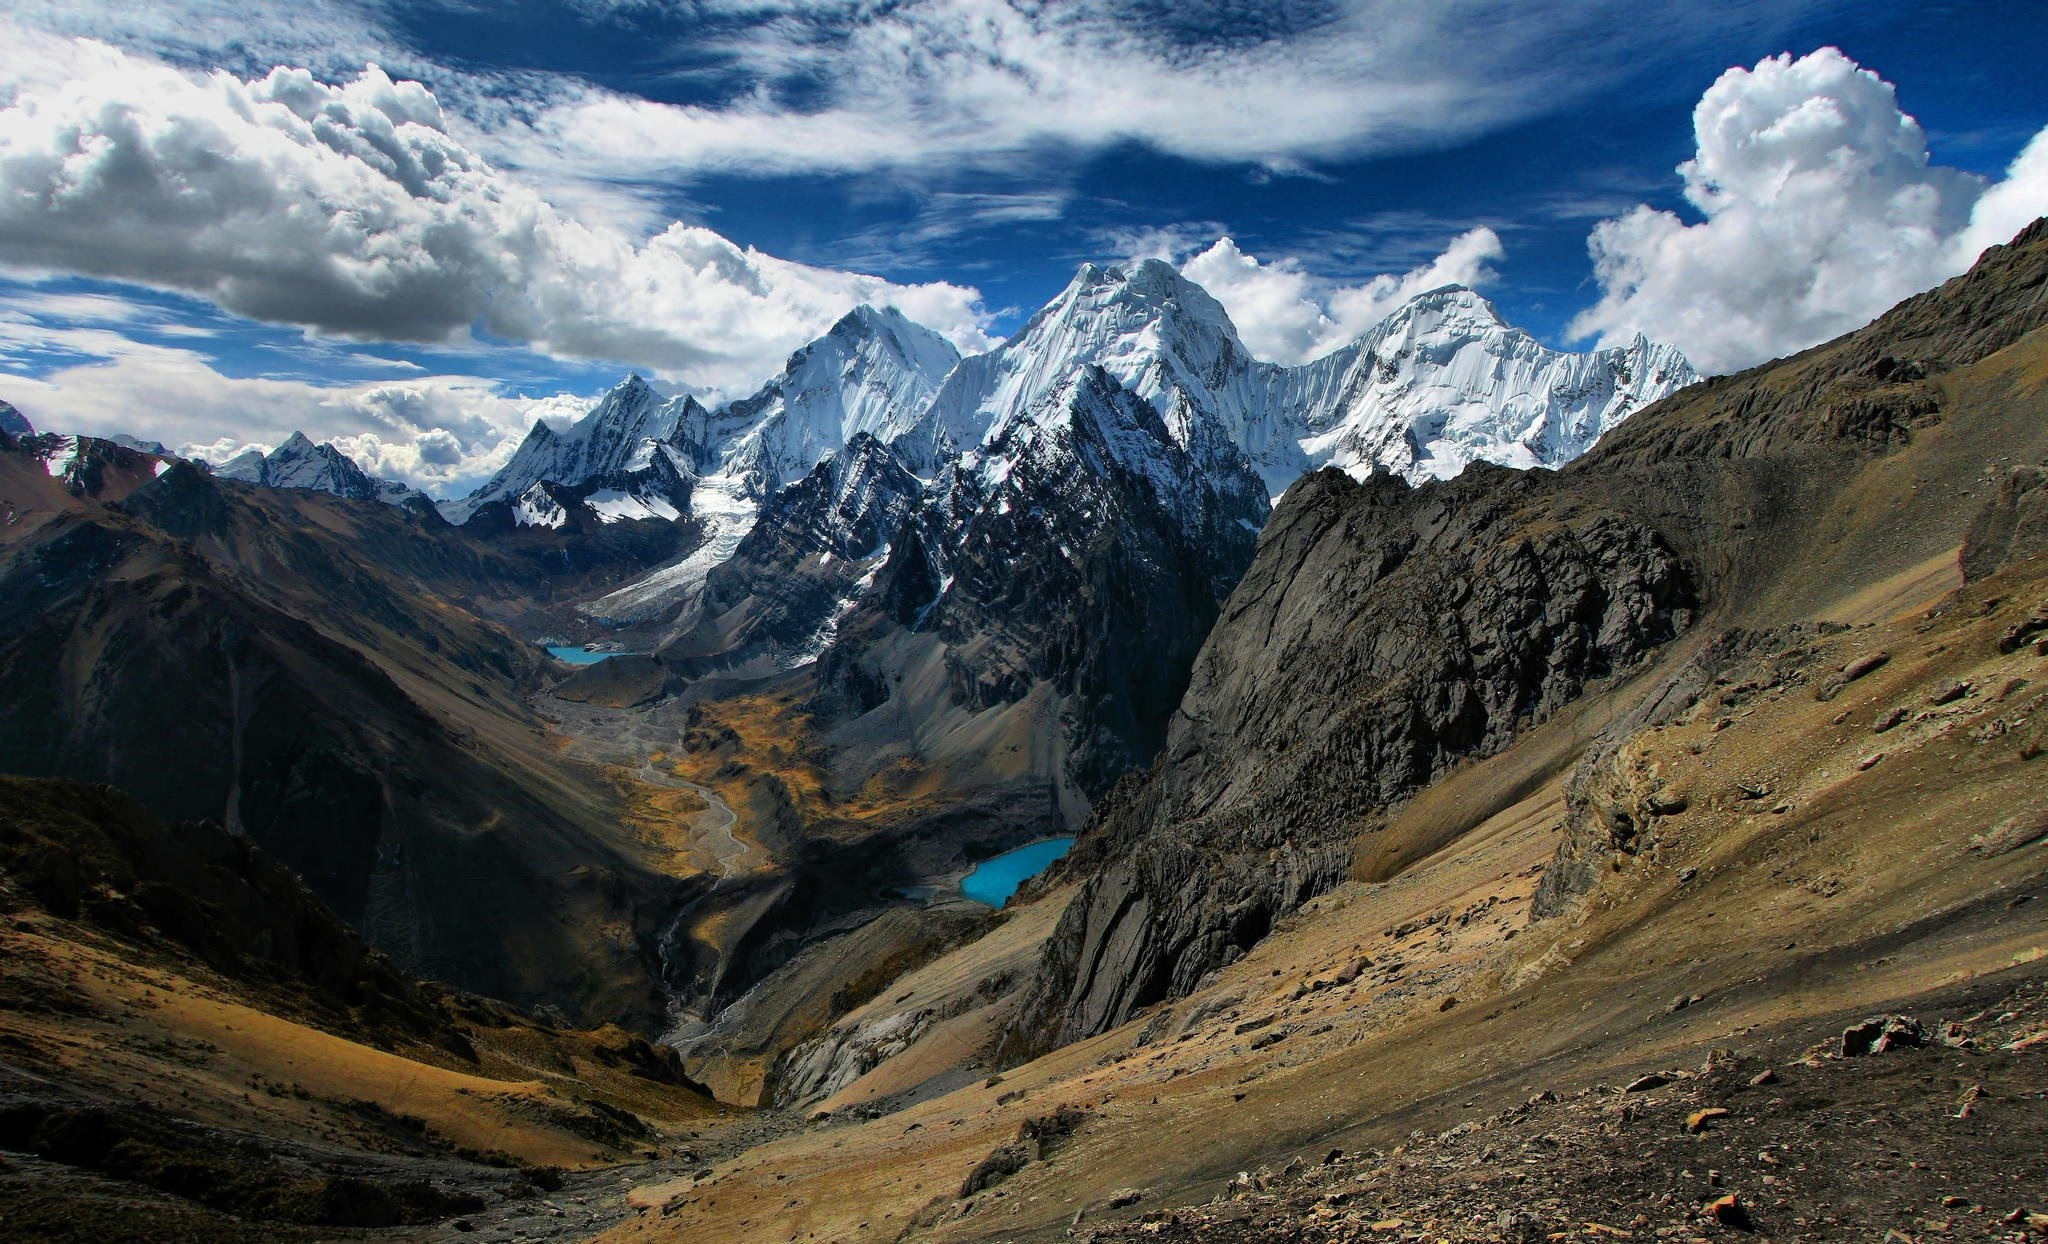 Peru mountains landscape, Breathtaking scenery, Serene beauty, Desktop background, 2050x1250 HD Desktop